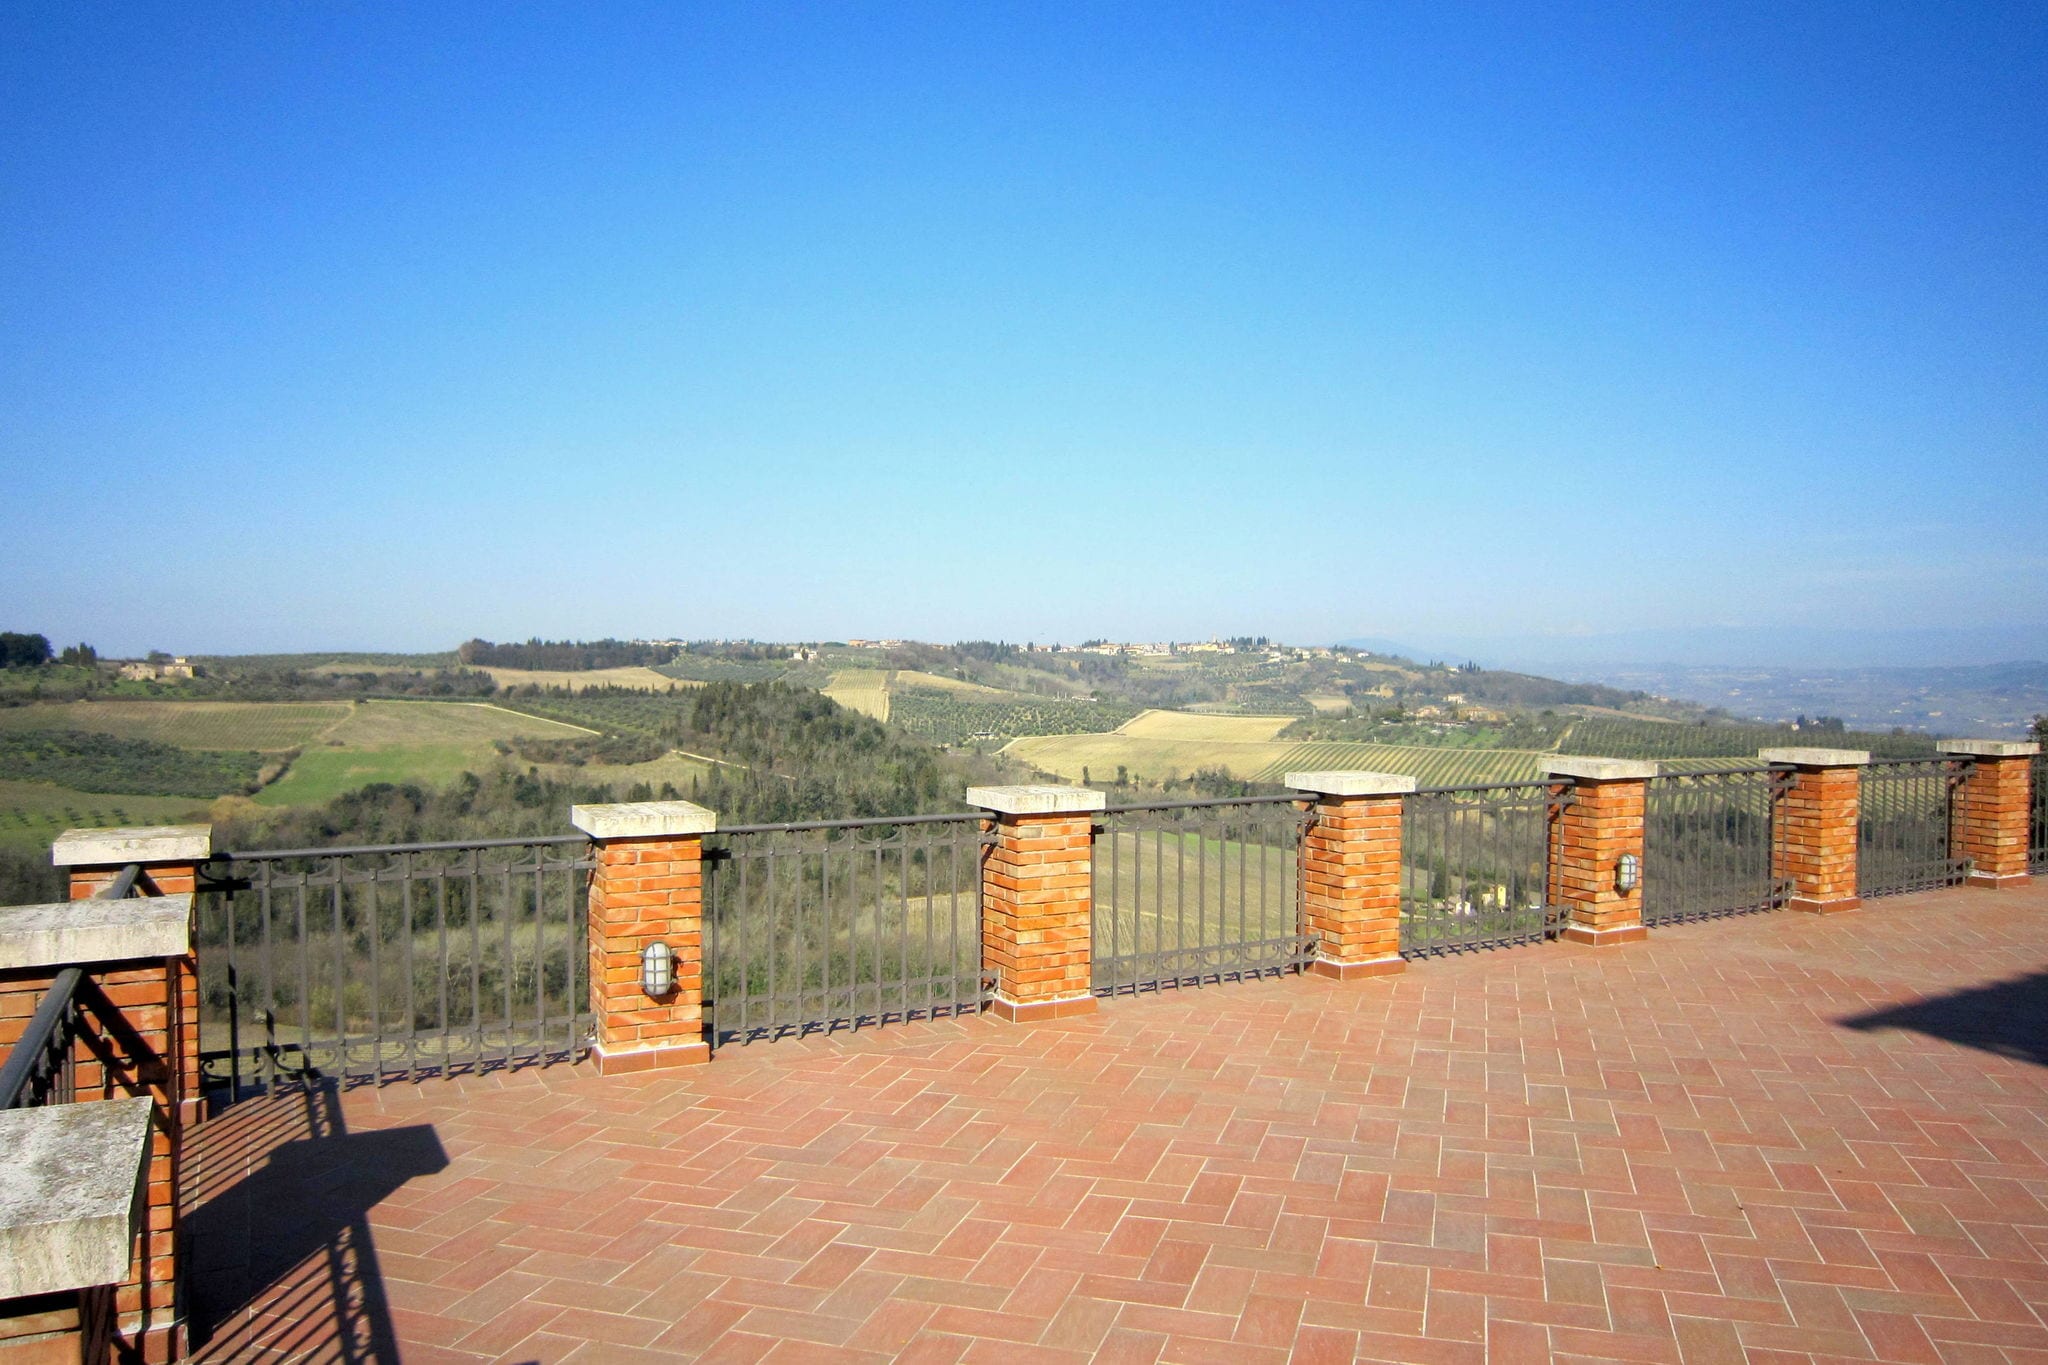 Une villa confortable située dans les collines de Toscane